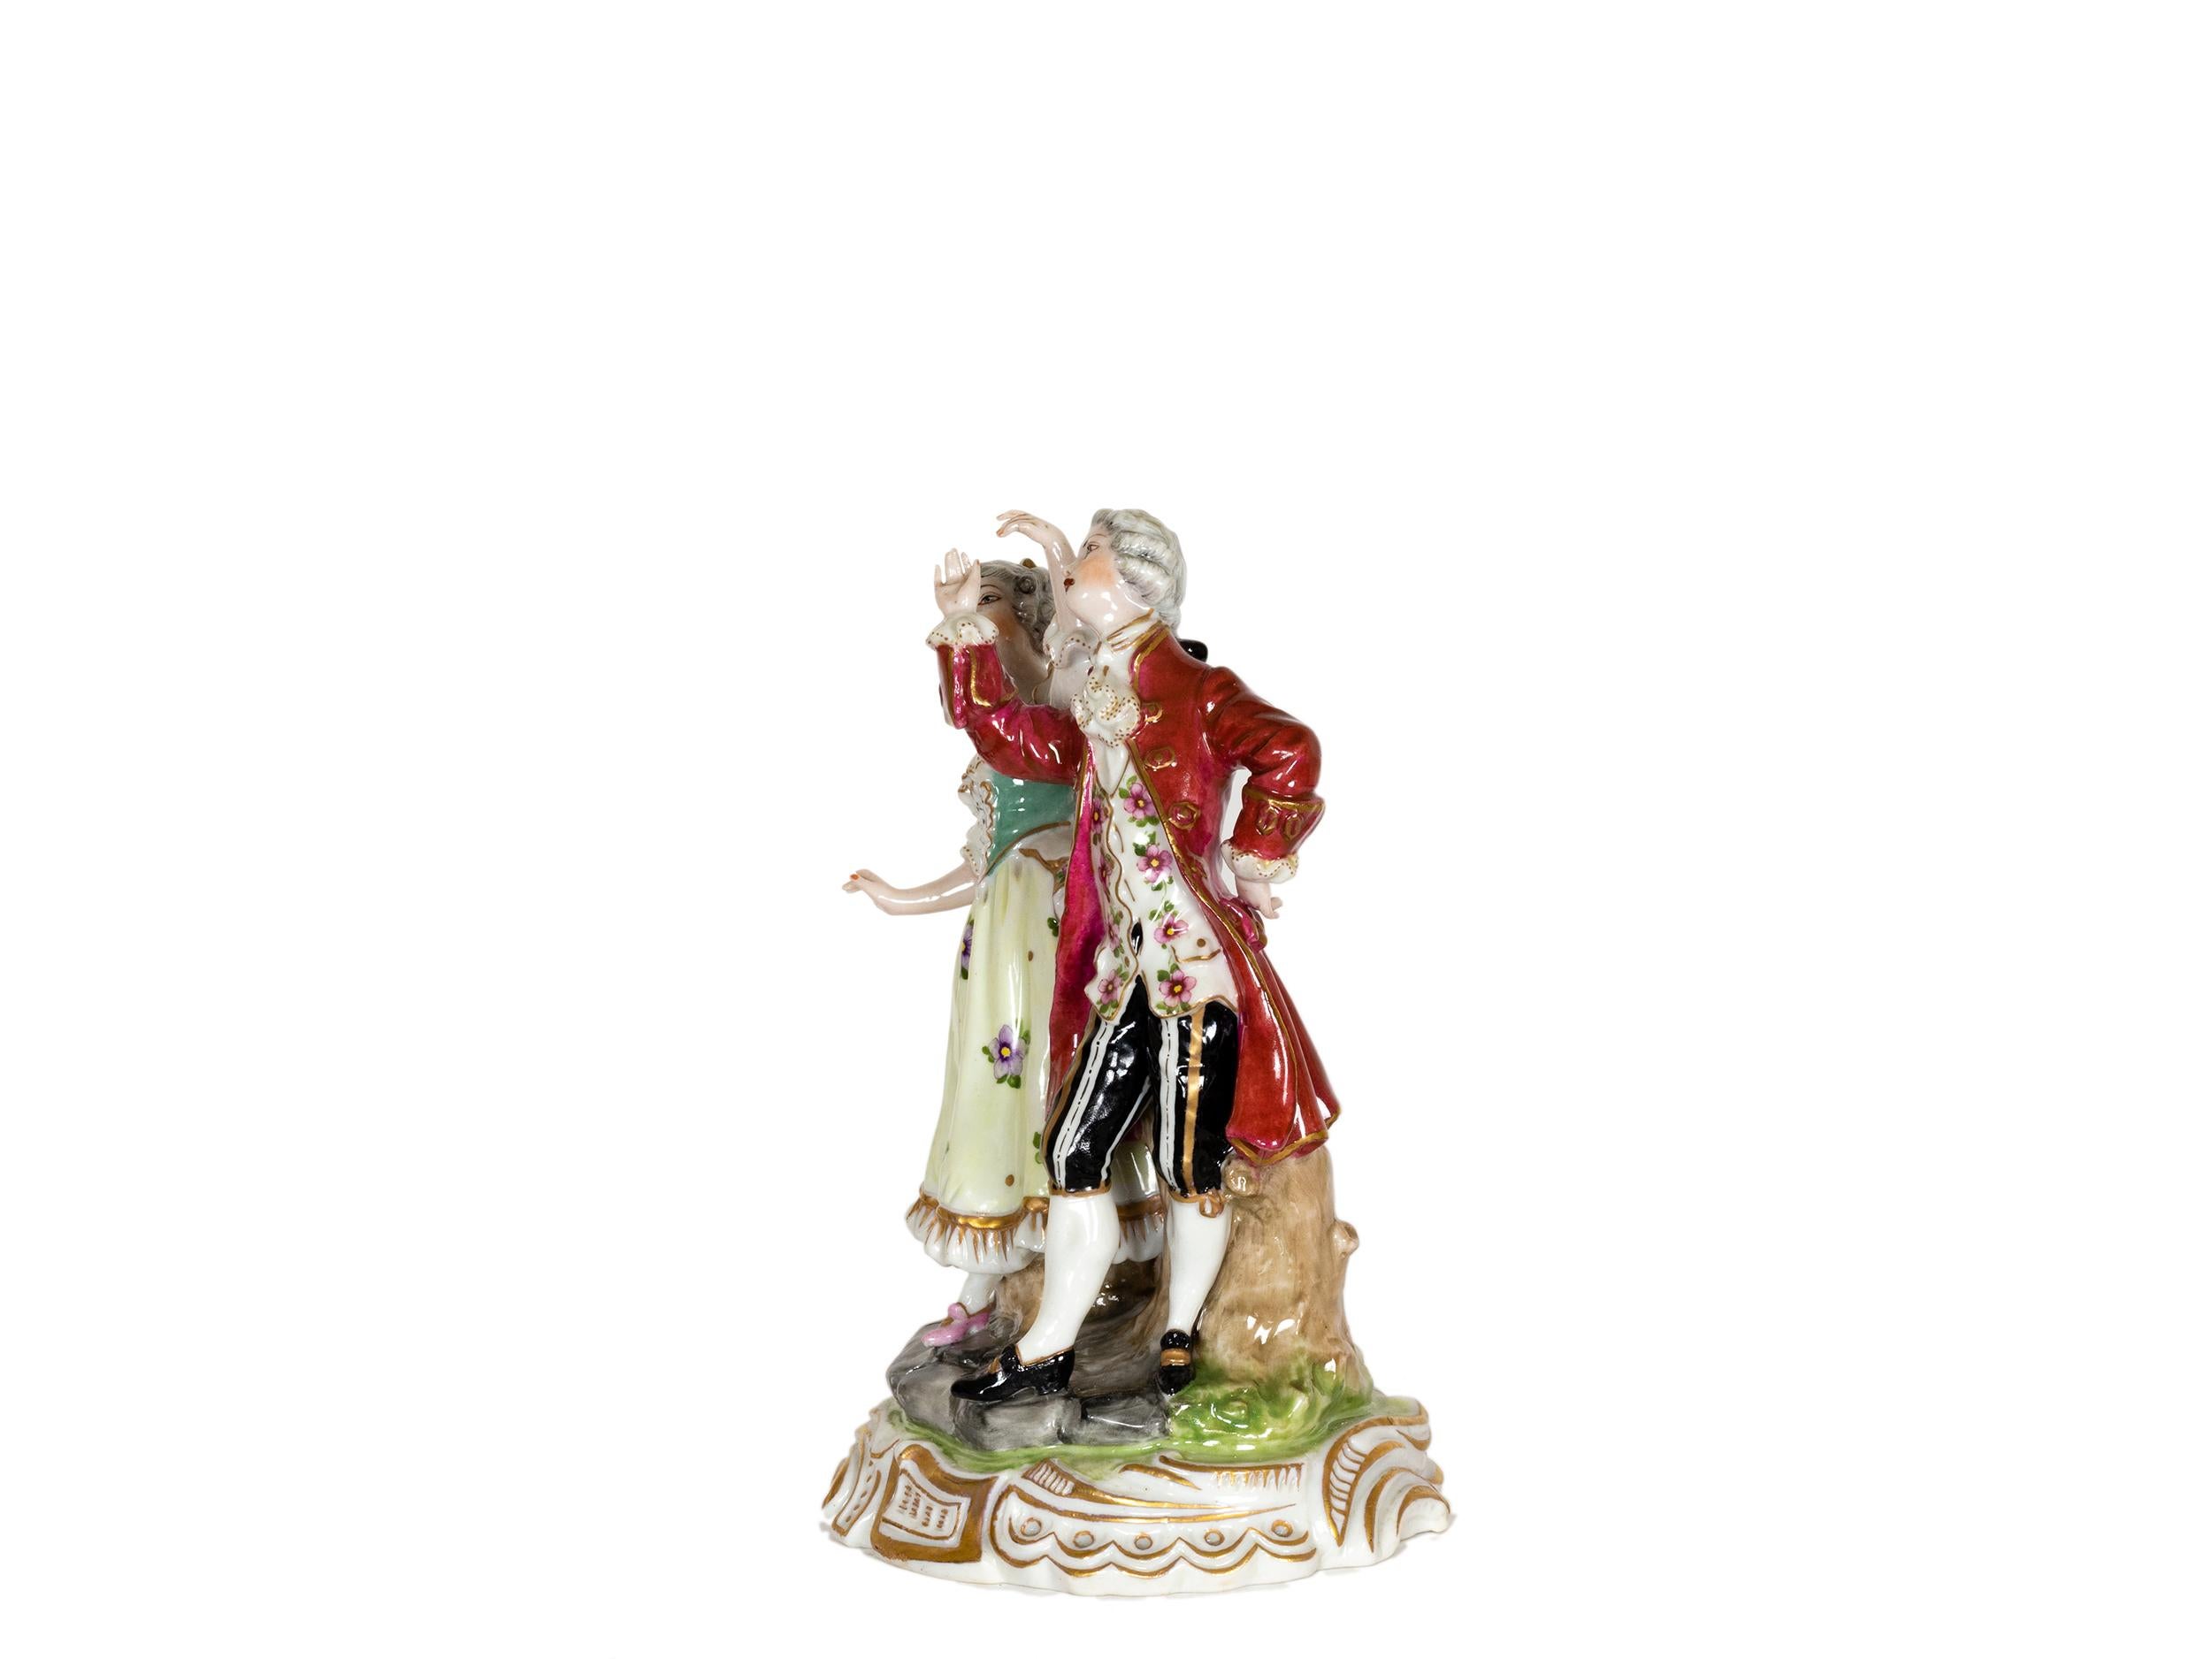 Charmante figurine baroque en porcelaine tendre translucide représentant un couple de danseurs de la manufacture Volkstedt, Muller & Co, Dresde, de la fin du XVIIIe siècle.
Marqué sur la base.
